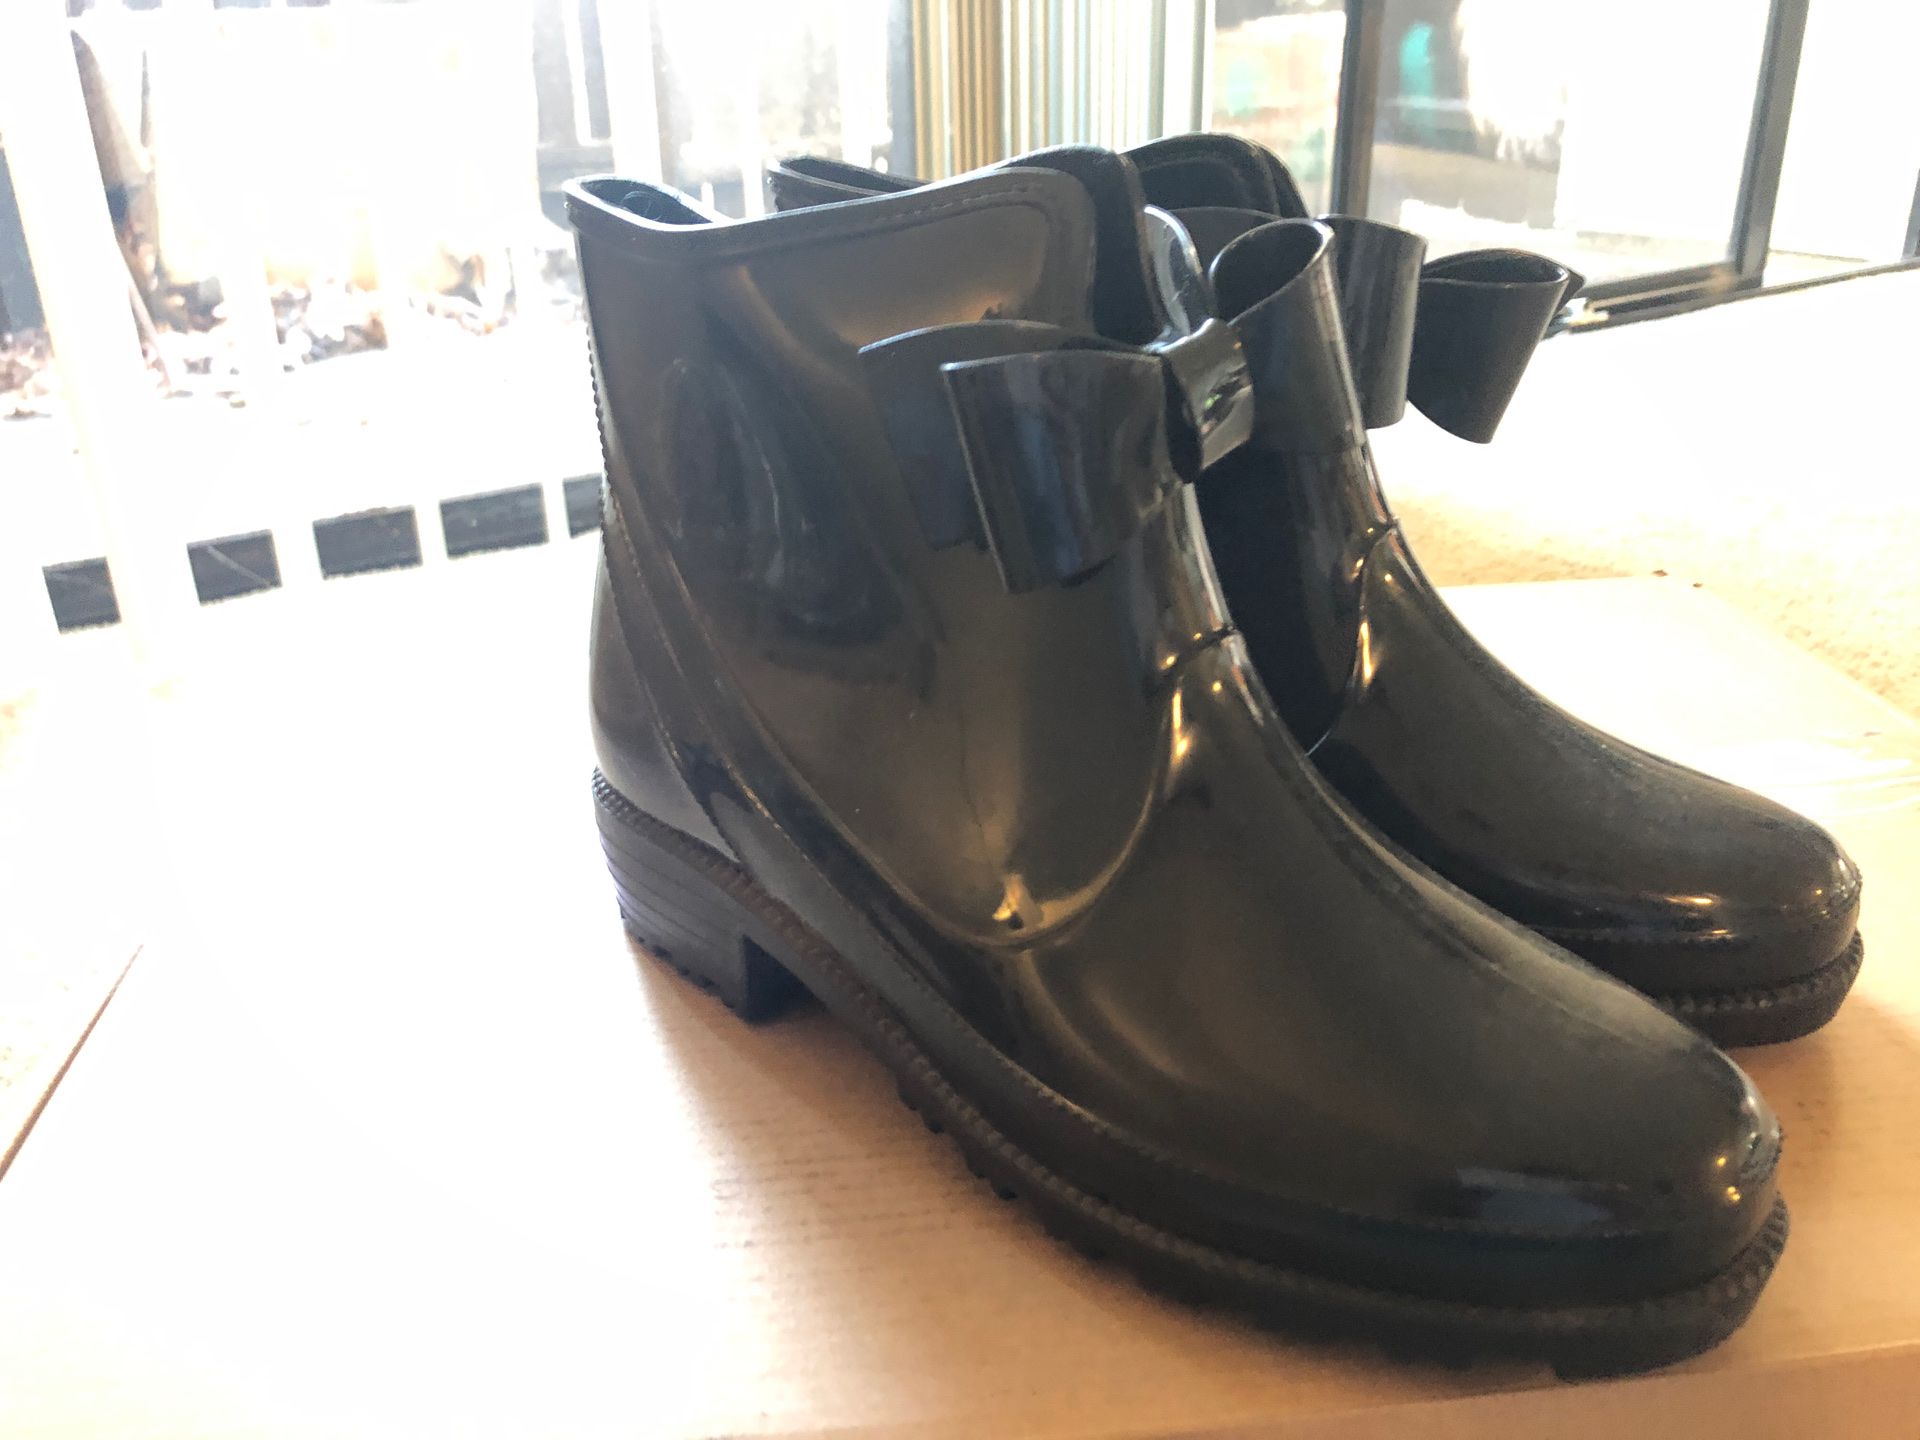 Size 7.5 - Rain boots